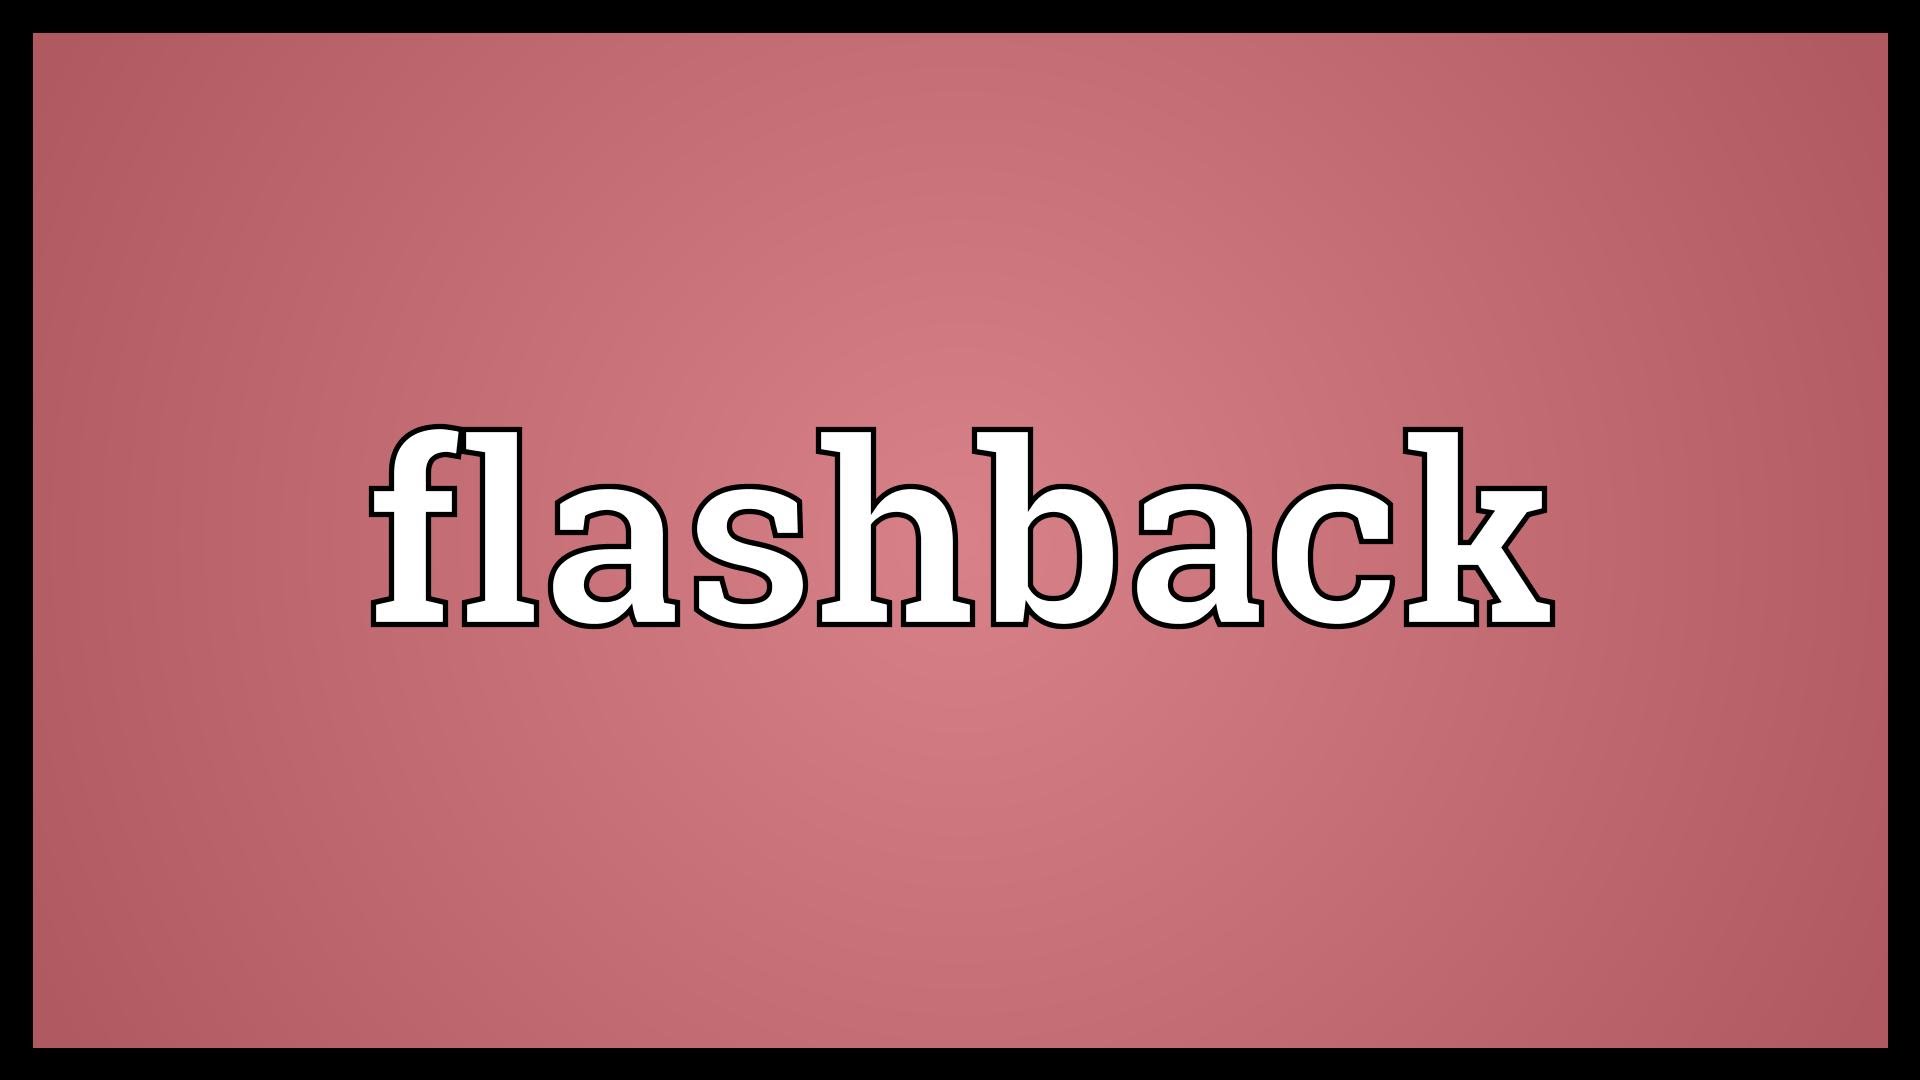 Flashback Meaning - YouTube